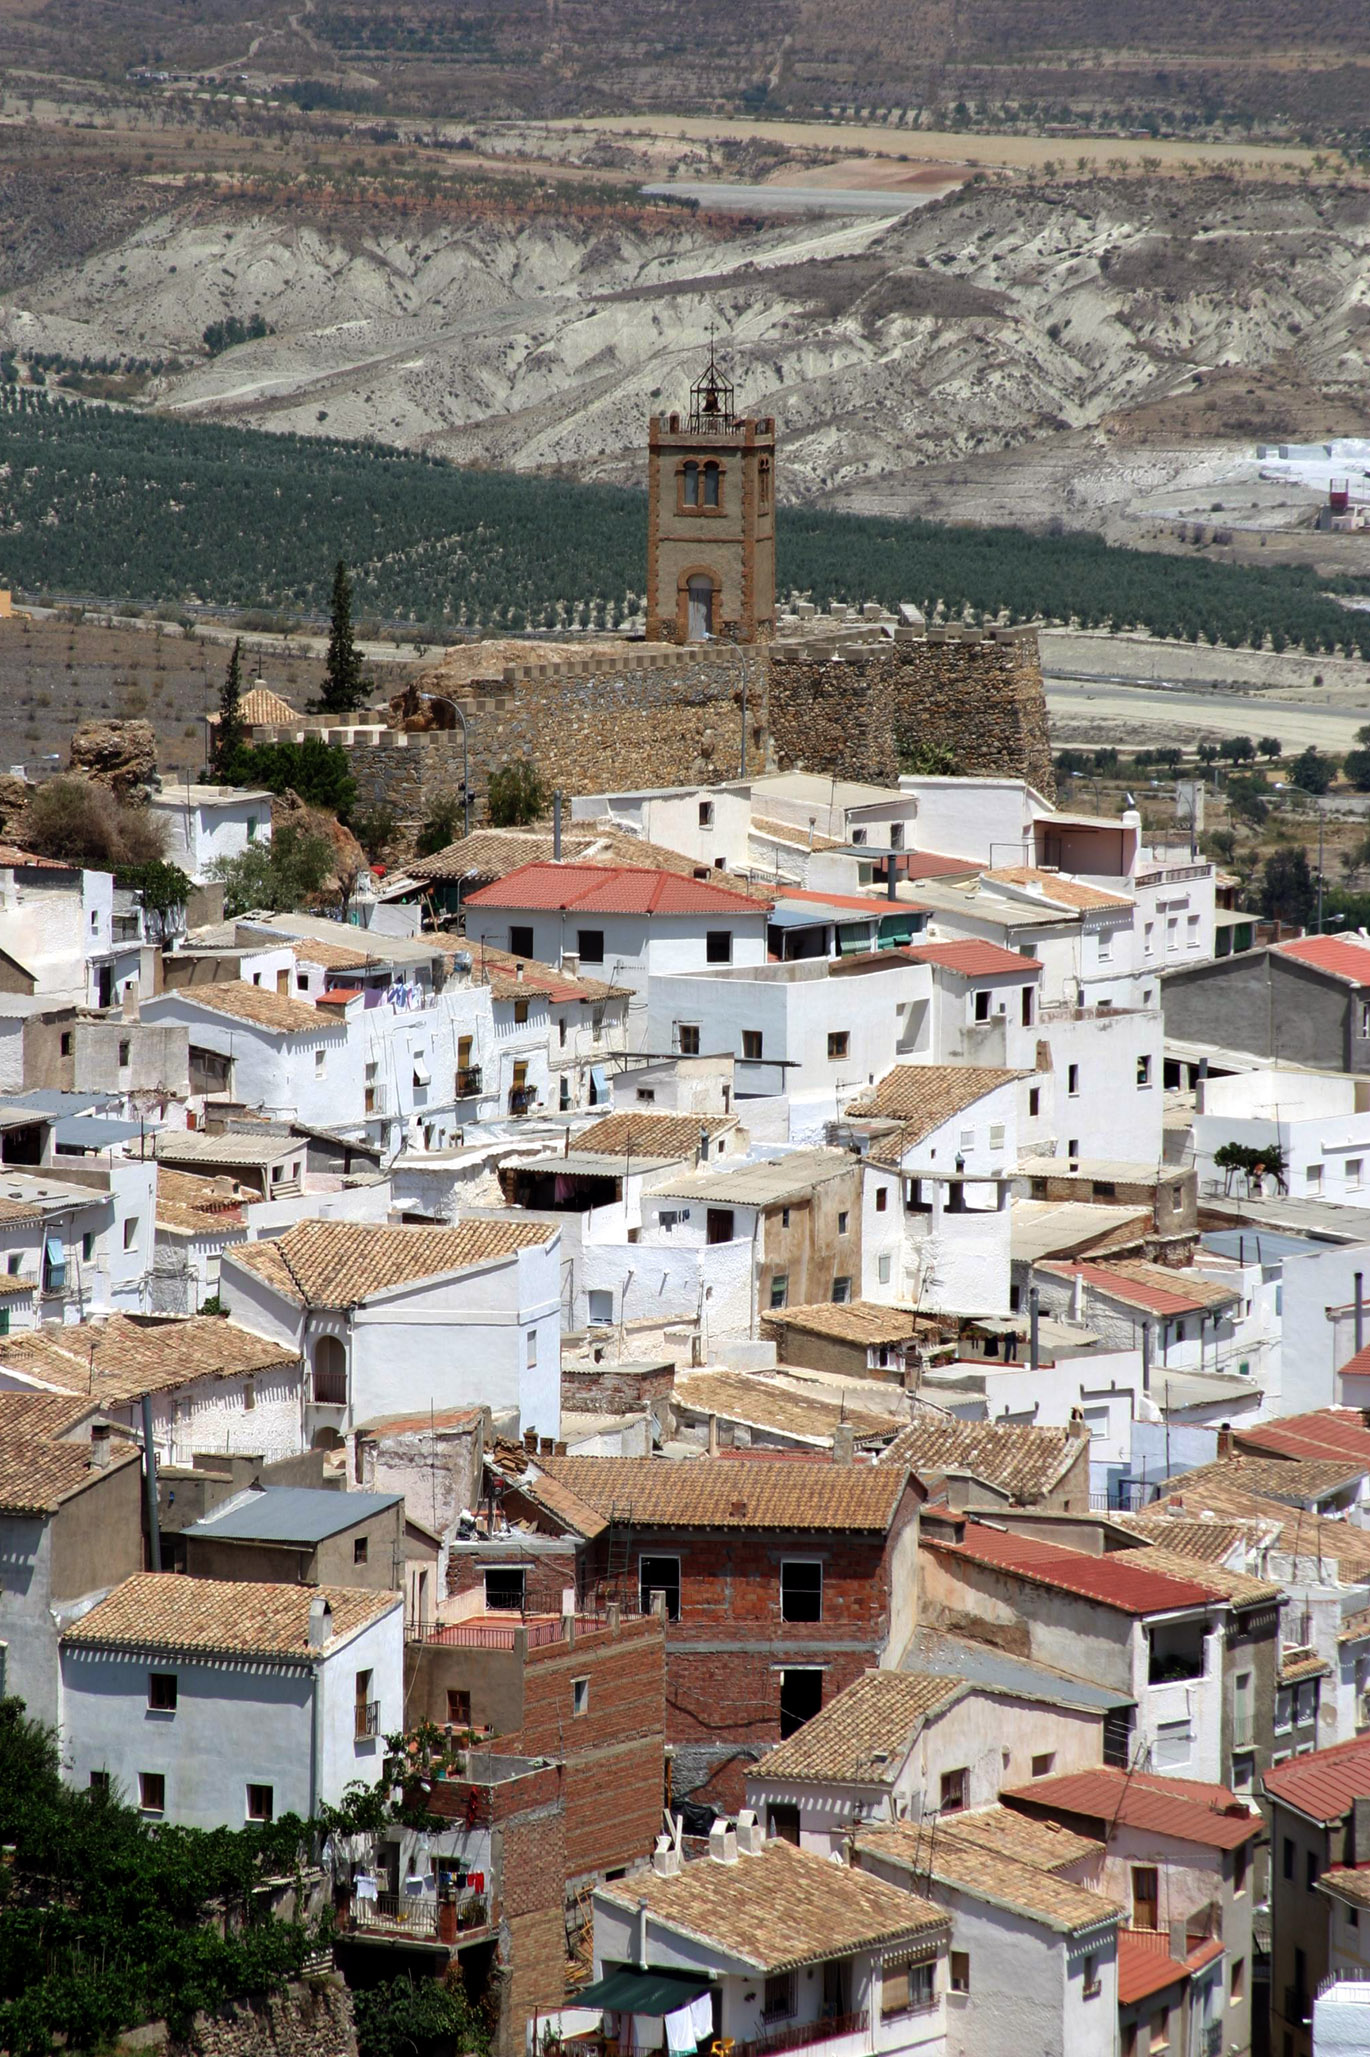 Vista general del caserío de Serón dominado por la silueta de su castillo. © Fotografía: Andrés Carrillo